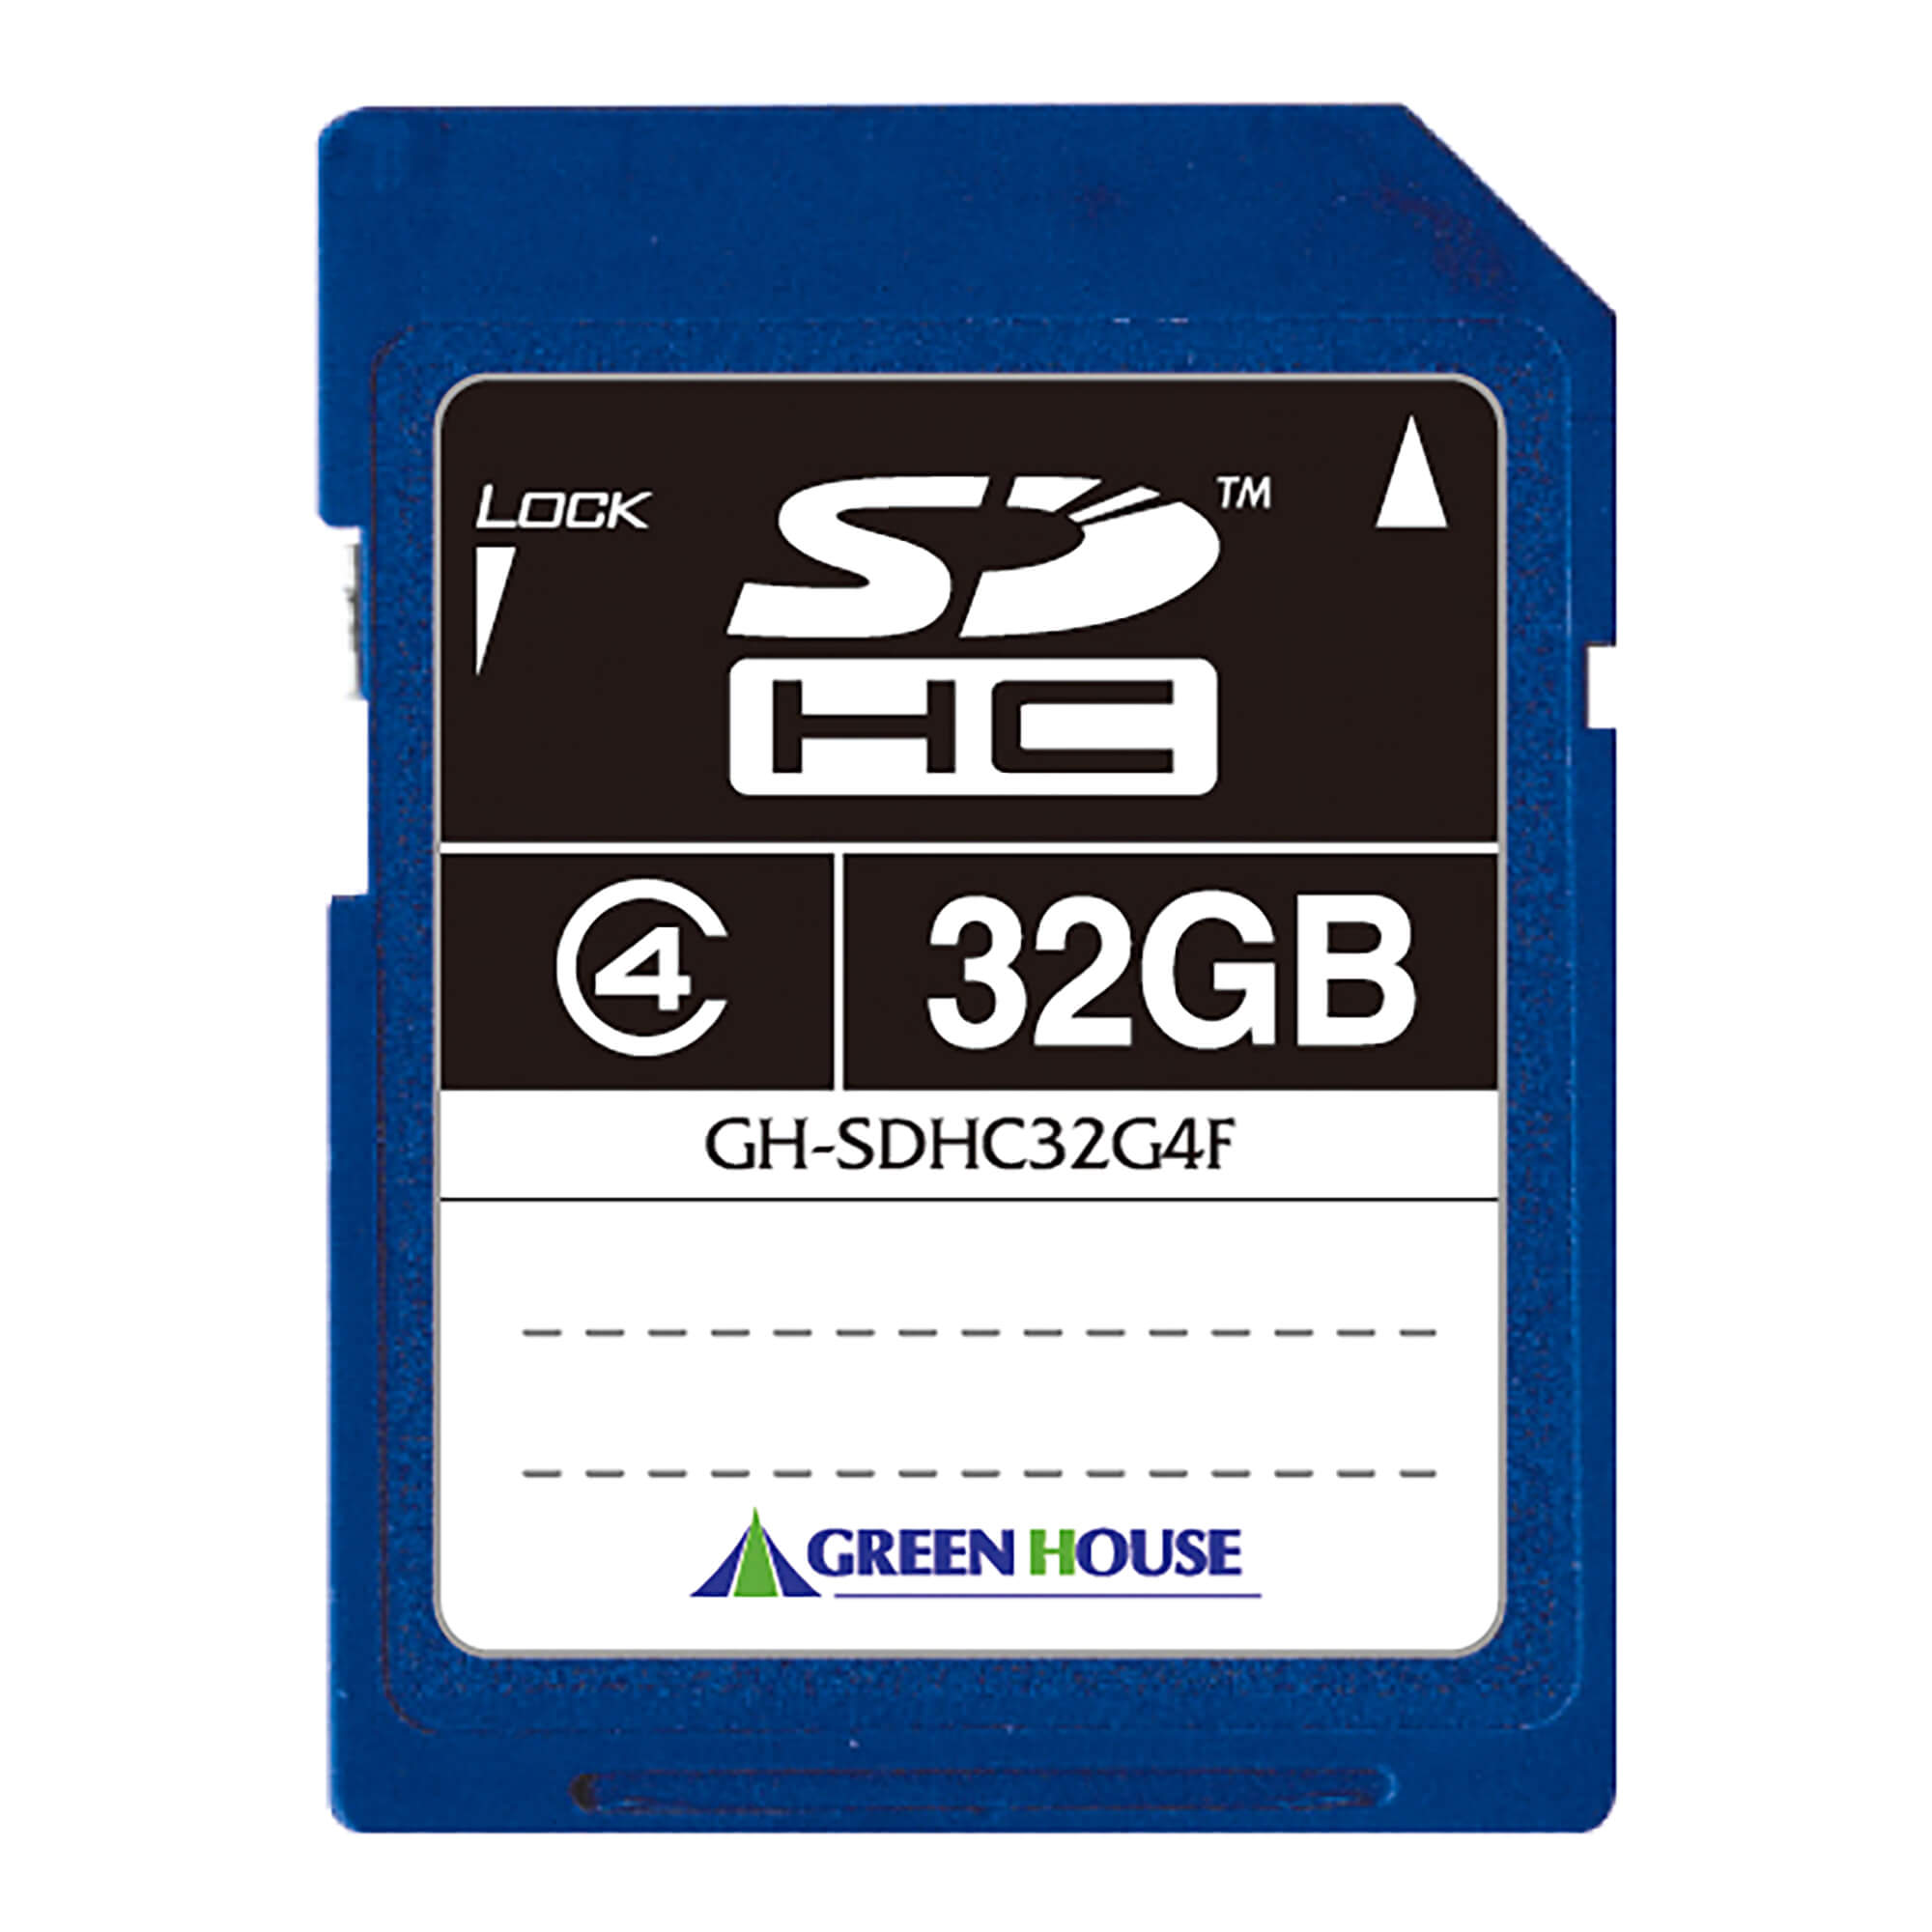 SDHCメモリーカード(4GB～32GB) GH-SDHC*4Fシリーズ GREEN HOUSE グリーンハウス